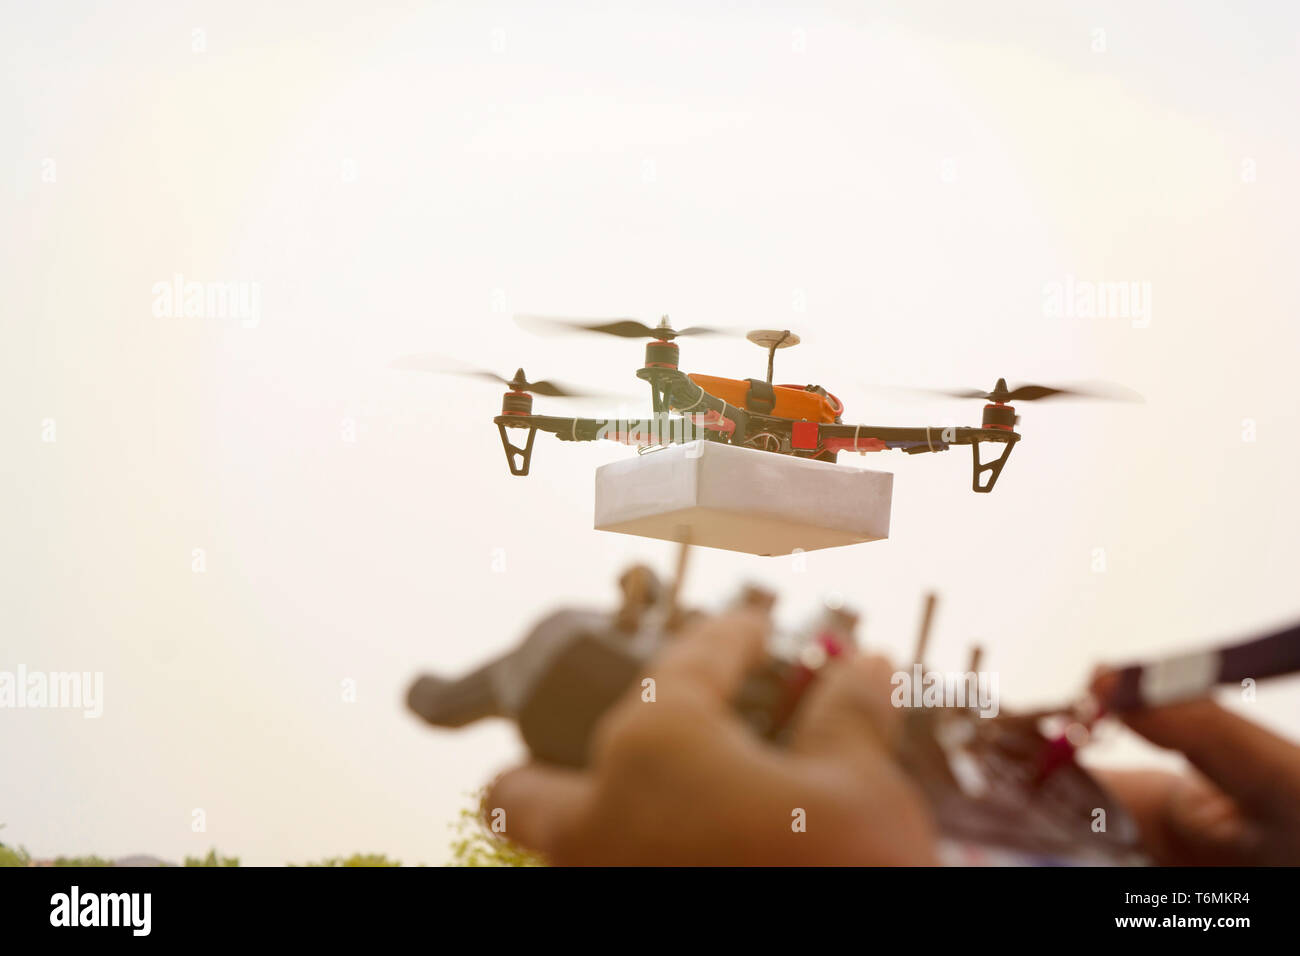 Nahaufnahme des unscharfen Hände opertaing Drone sender, empfänger Controller, Controller in der konzentrieren, während Drohne im Fokus der Hintergrund ist. Stockfoto